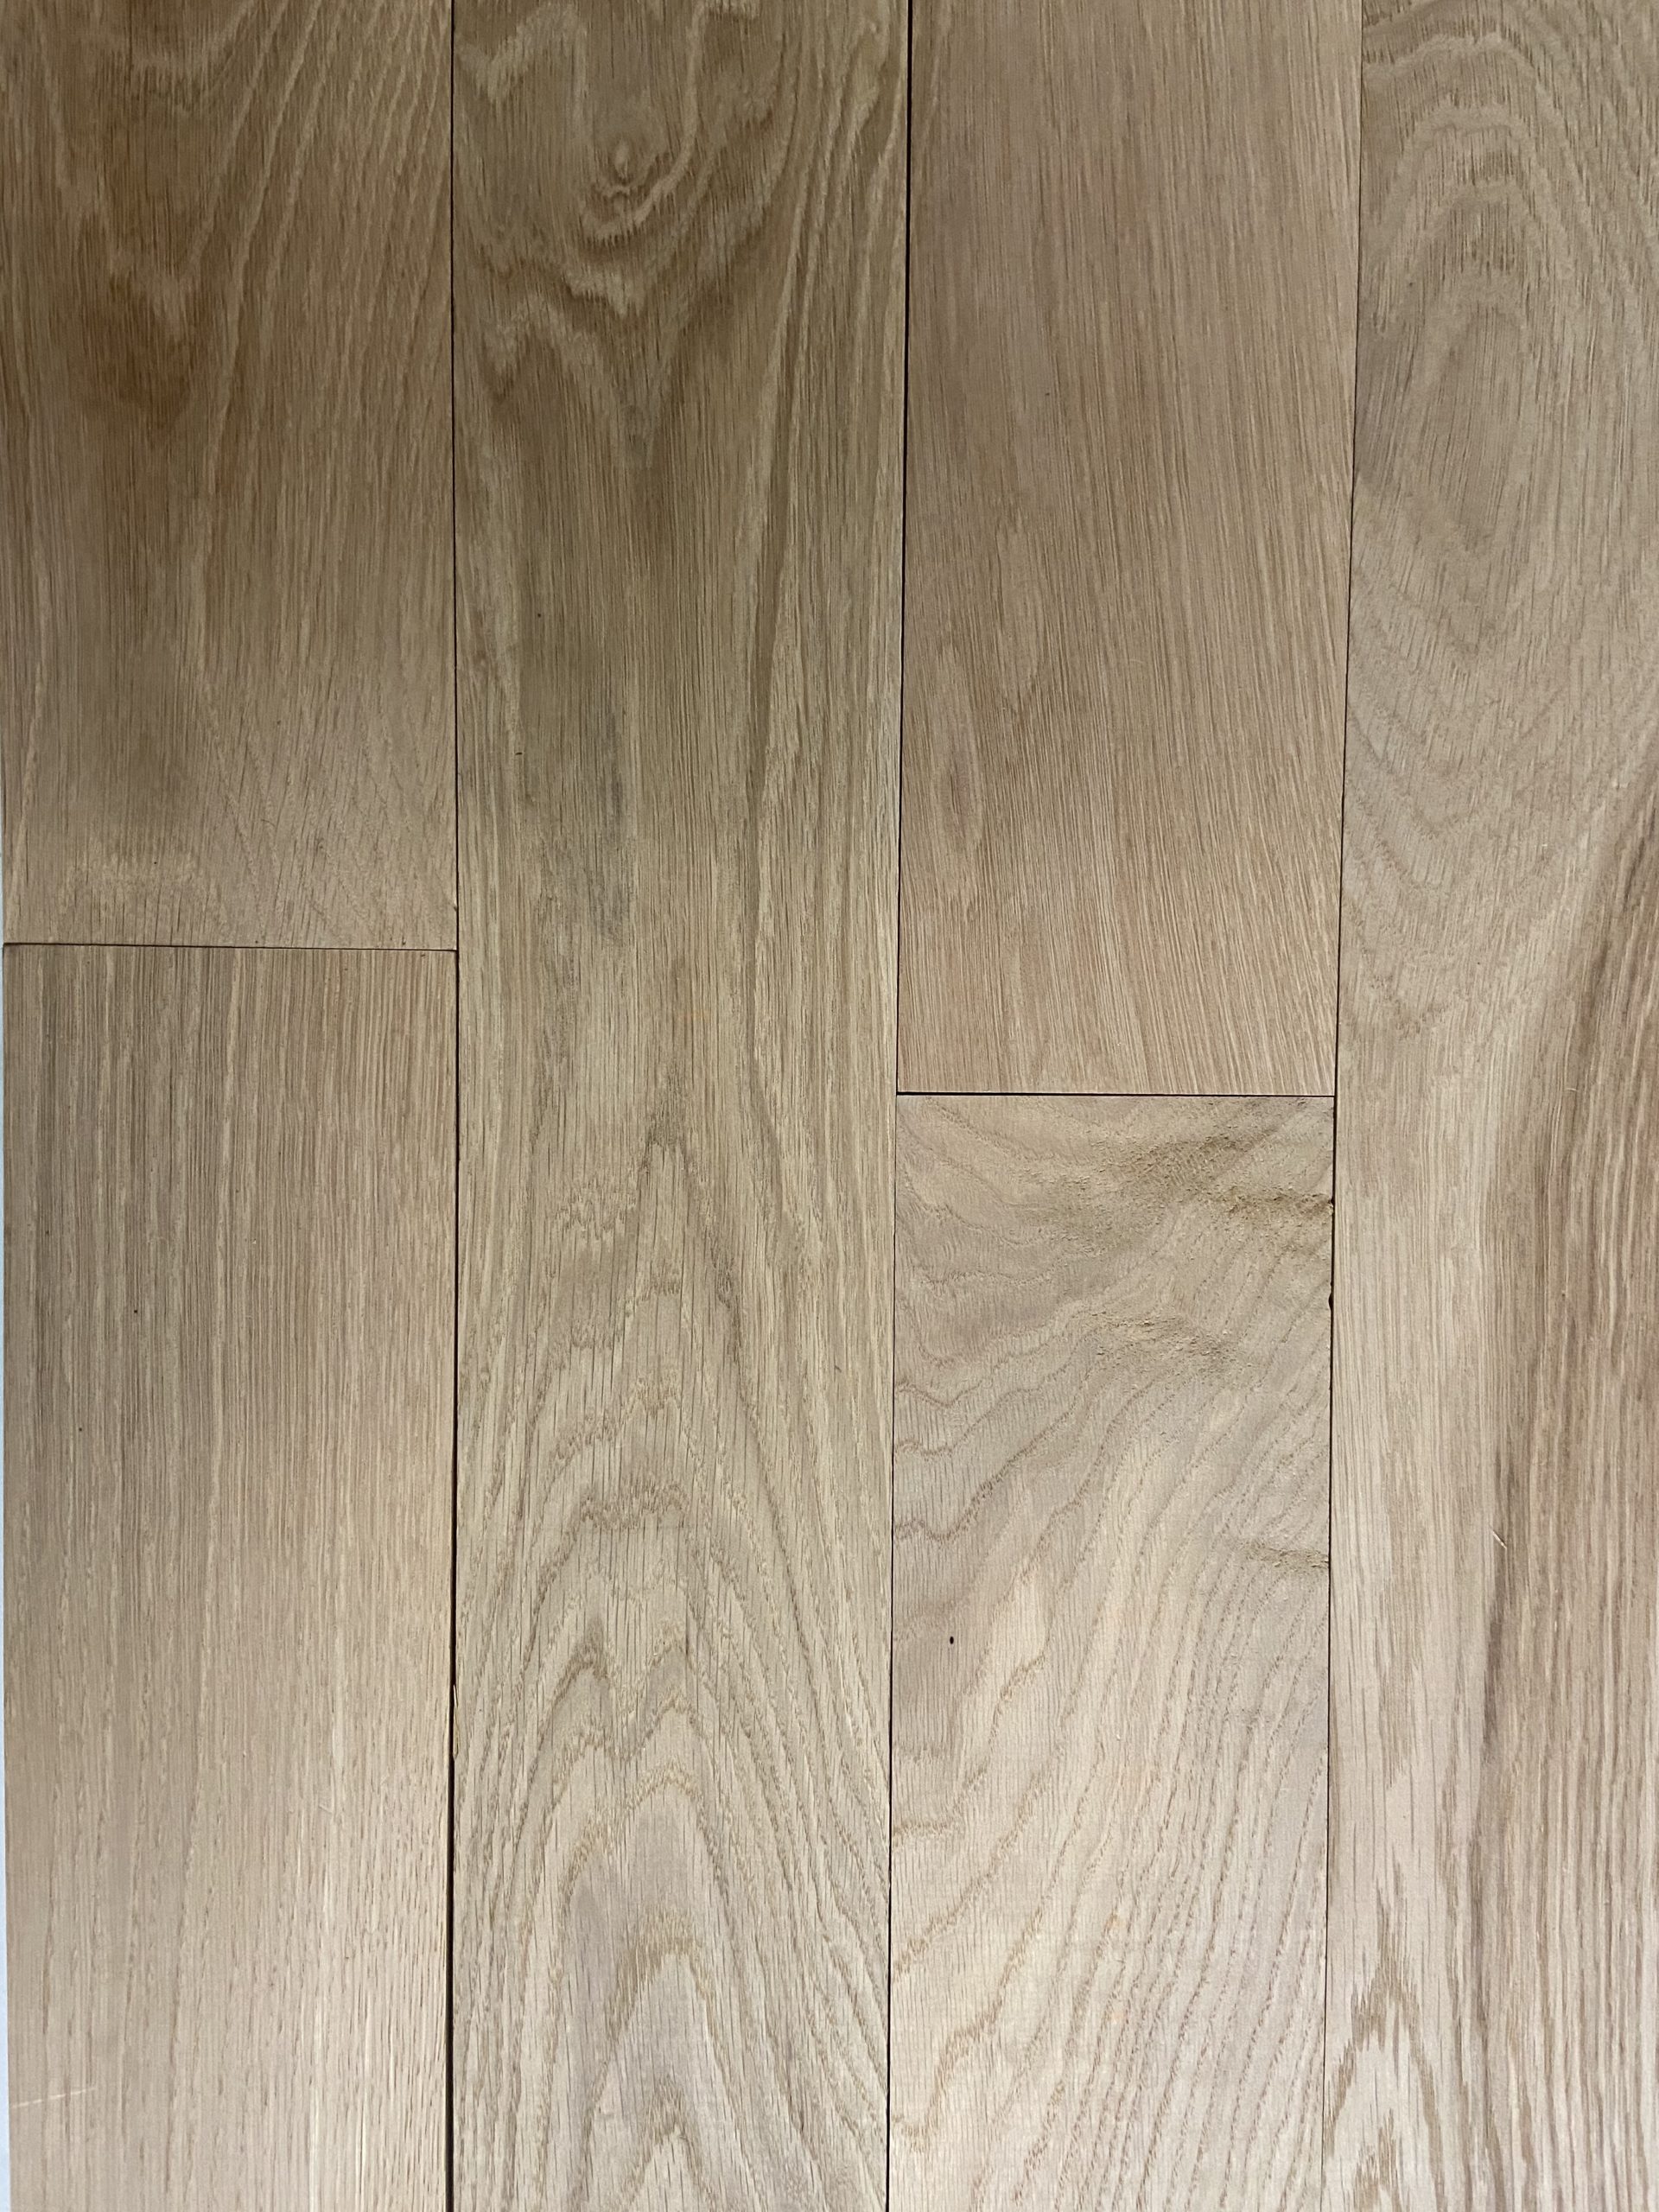 Unfinished White Oak Hardwood Flooring, Unfinished Hardwood Flooring